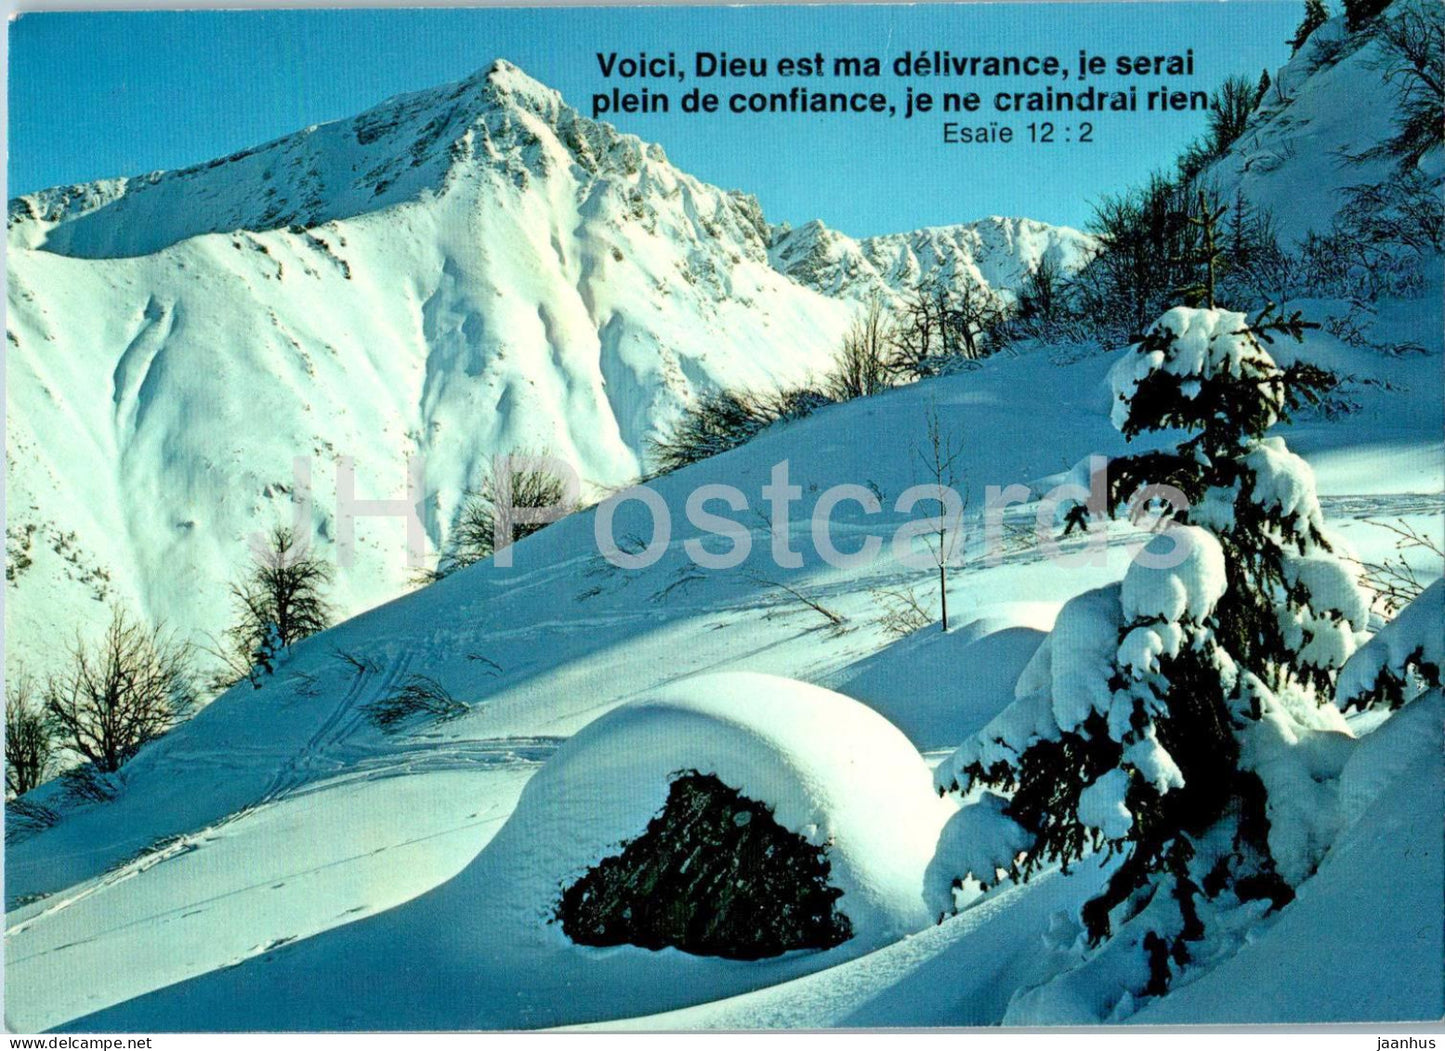 Wasserngrat sur Gstaad - 14494 - 1987 - Switzerland - used - JH Postcards